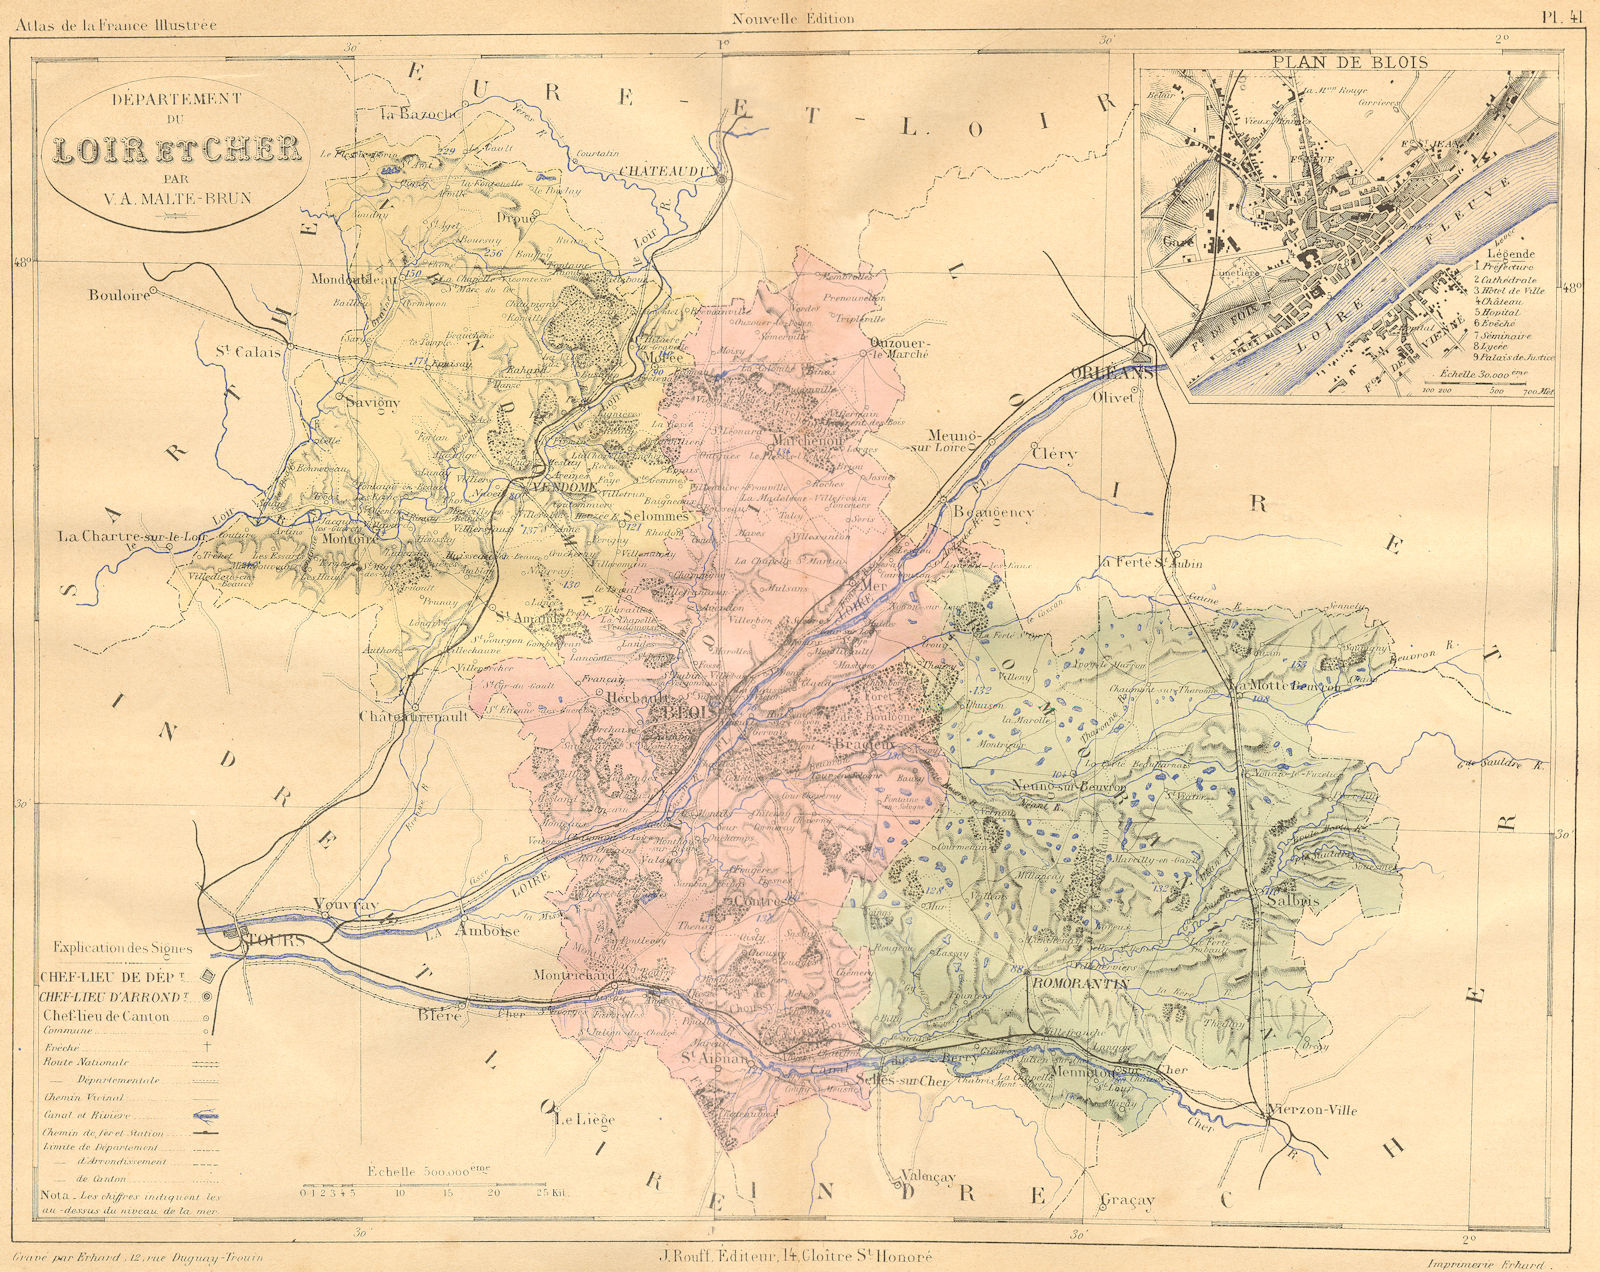 LOIR-CHER. Departement du; plan de Blois 1881 old antique map chart